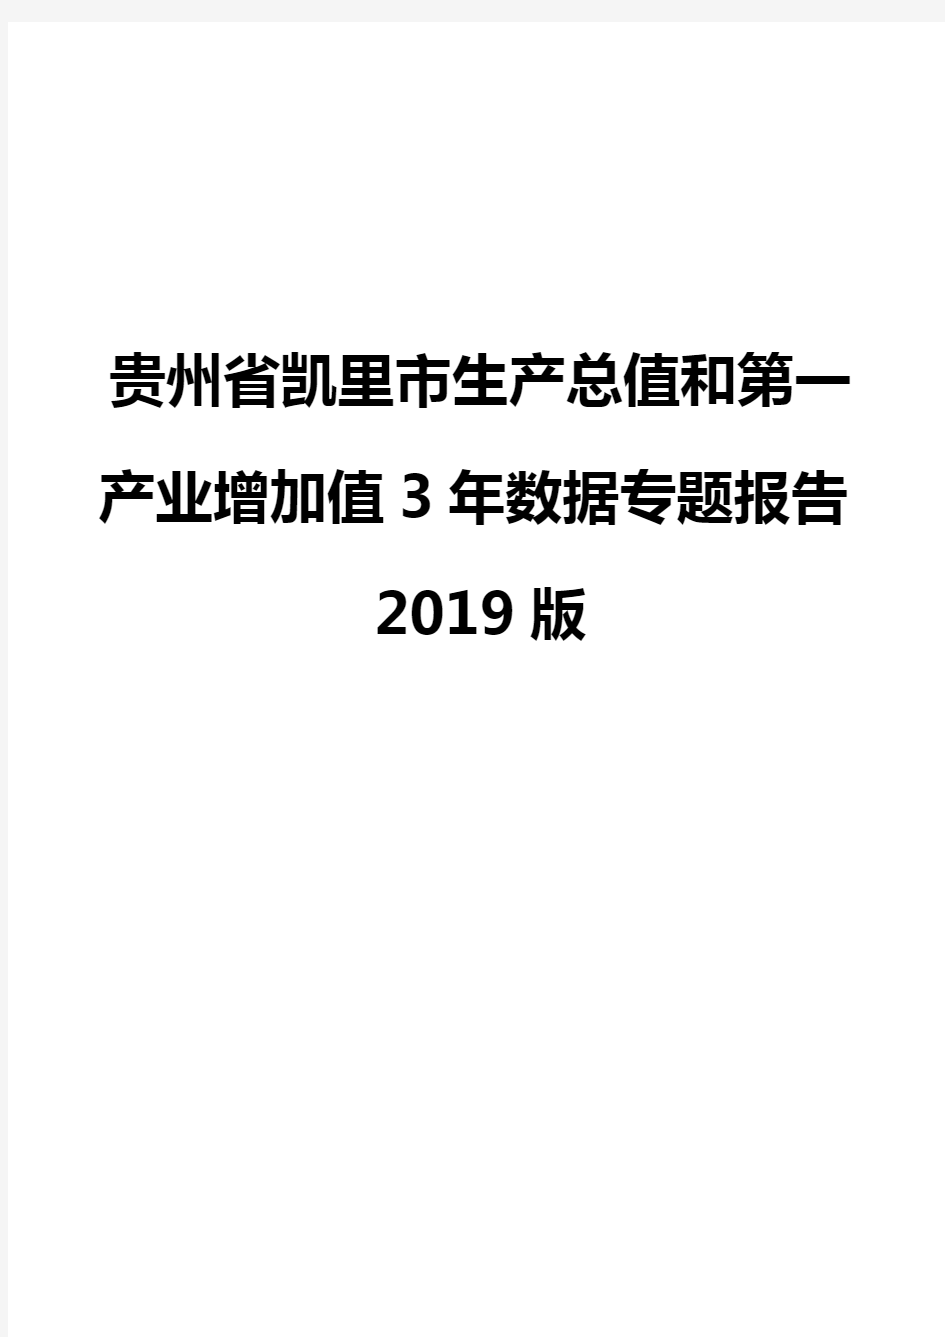 贵州省凯里市生产总值和第一产业增加值3年数据专题报告2019版